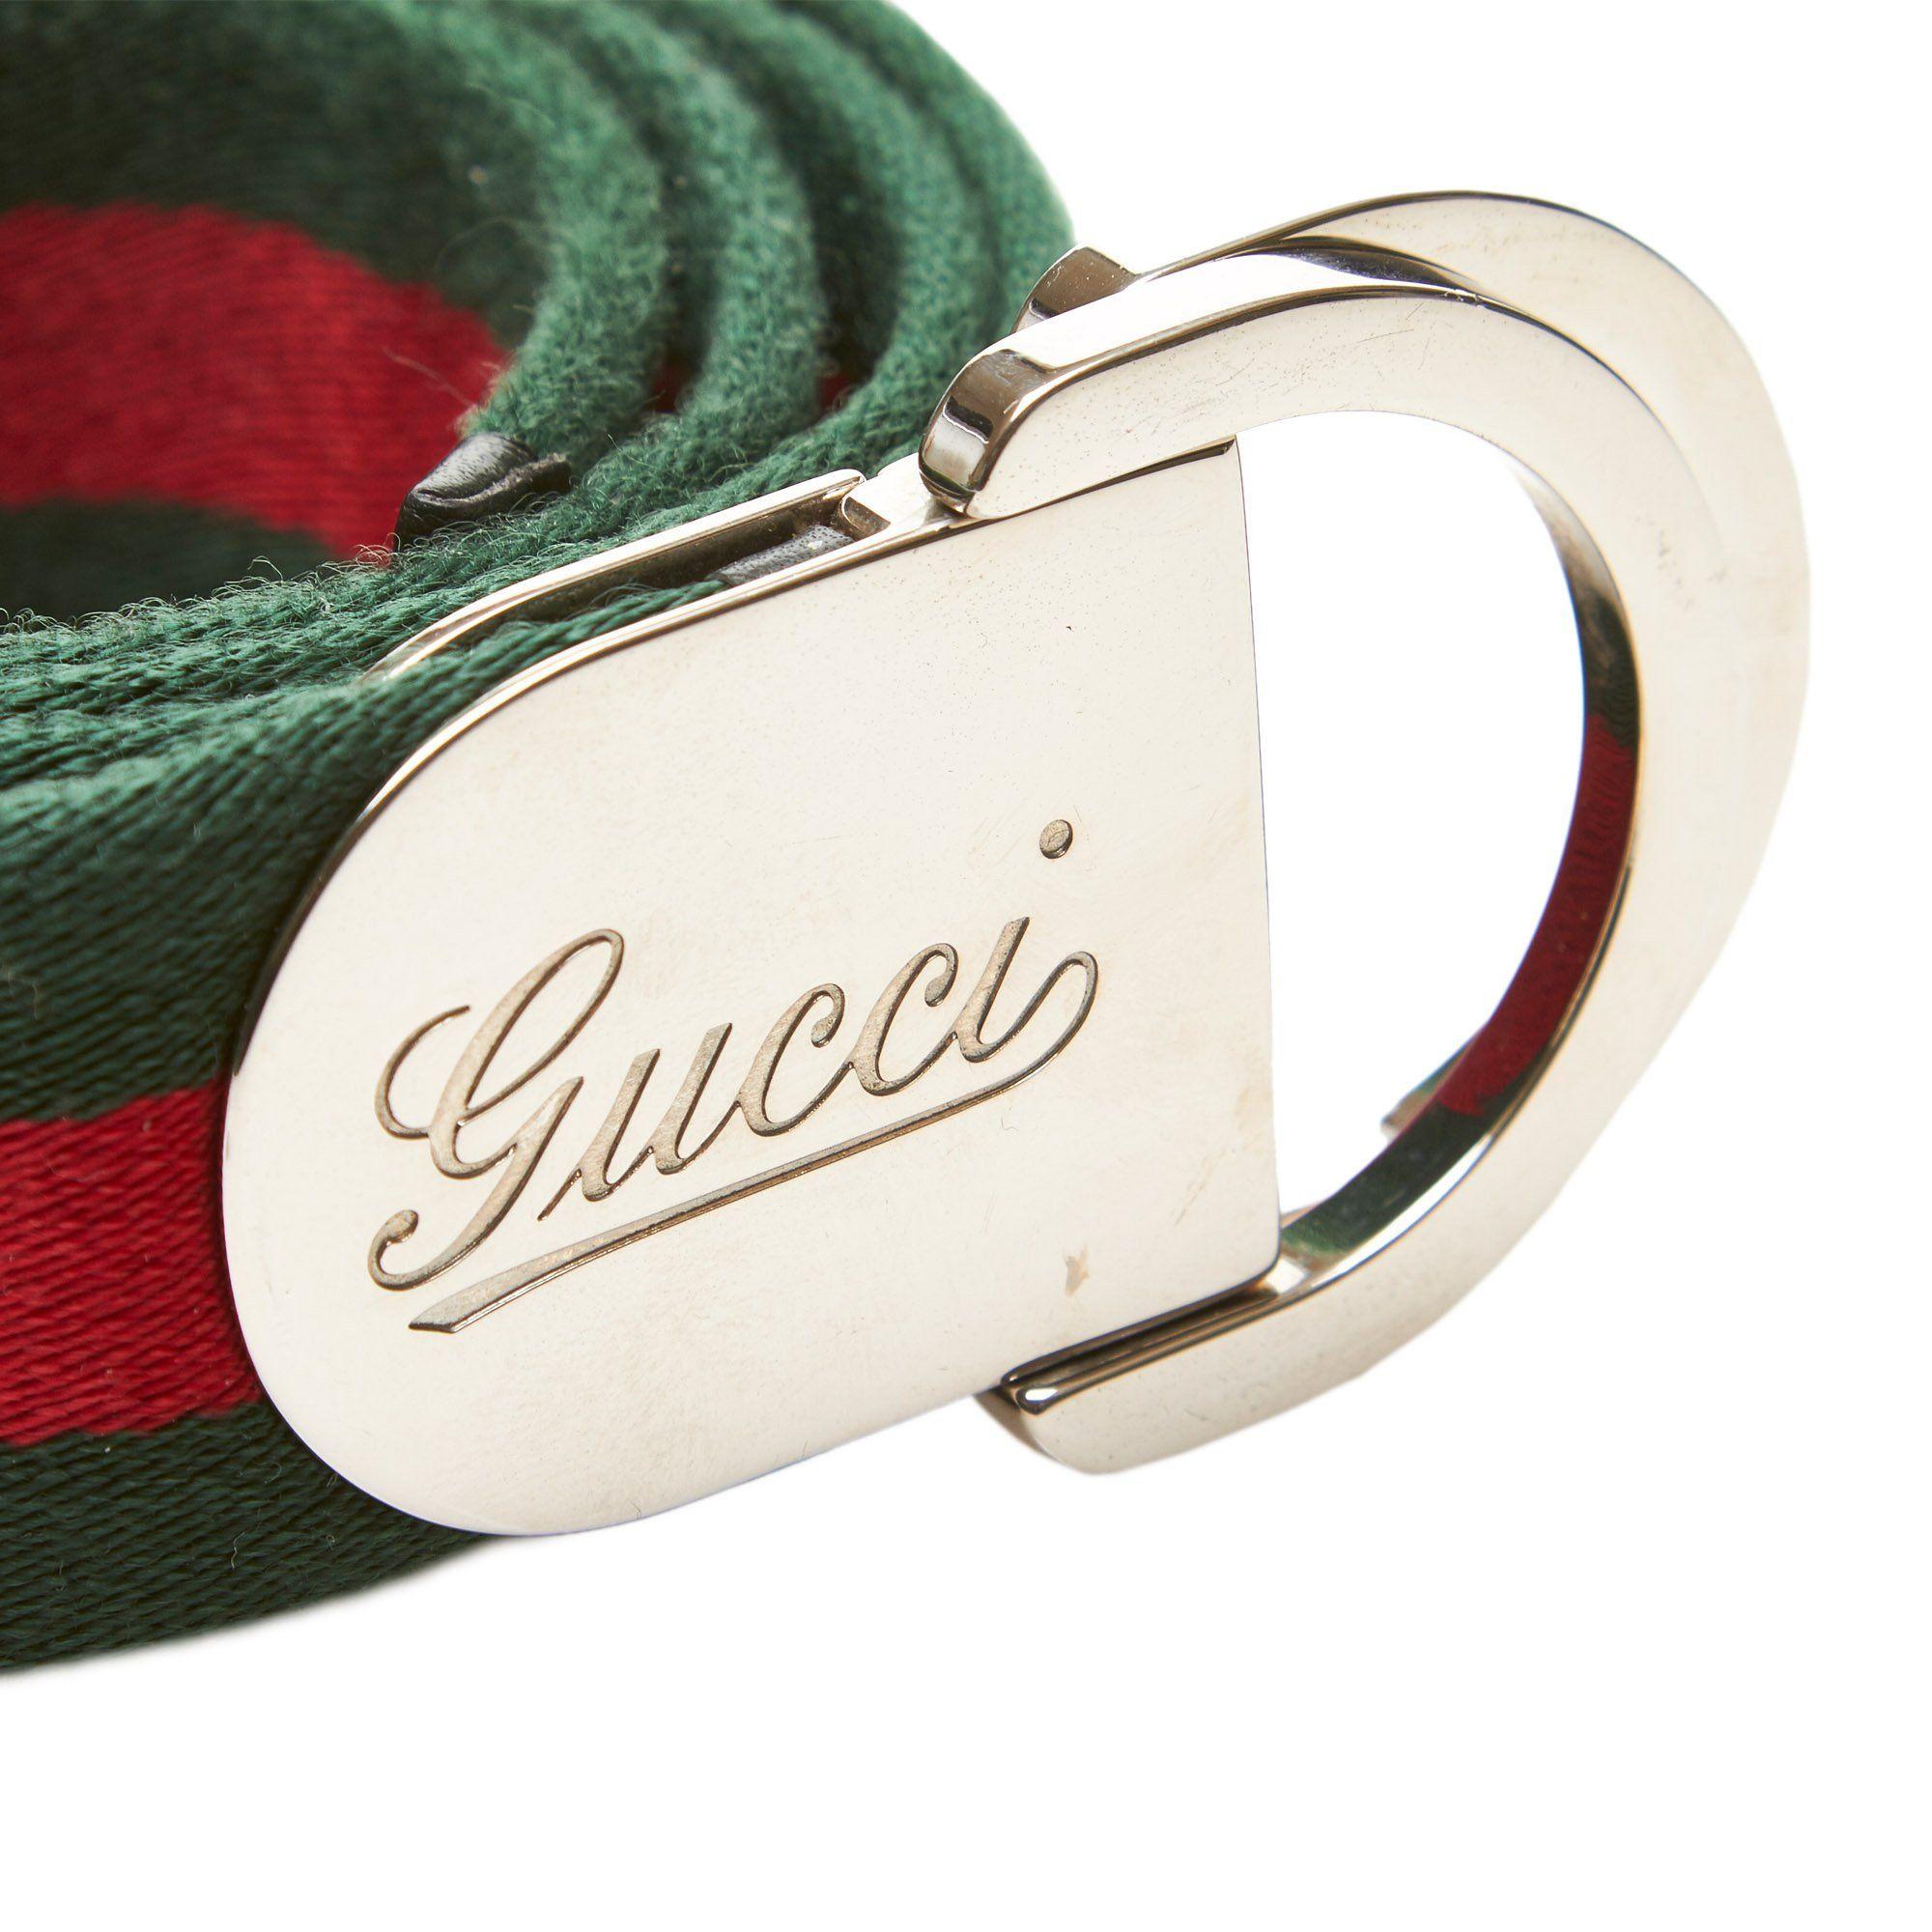 Gucci Cursive Logo - GUCCI WEB CURSIVE LOGO BELT